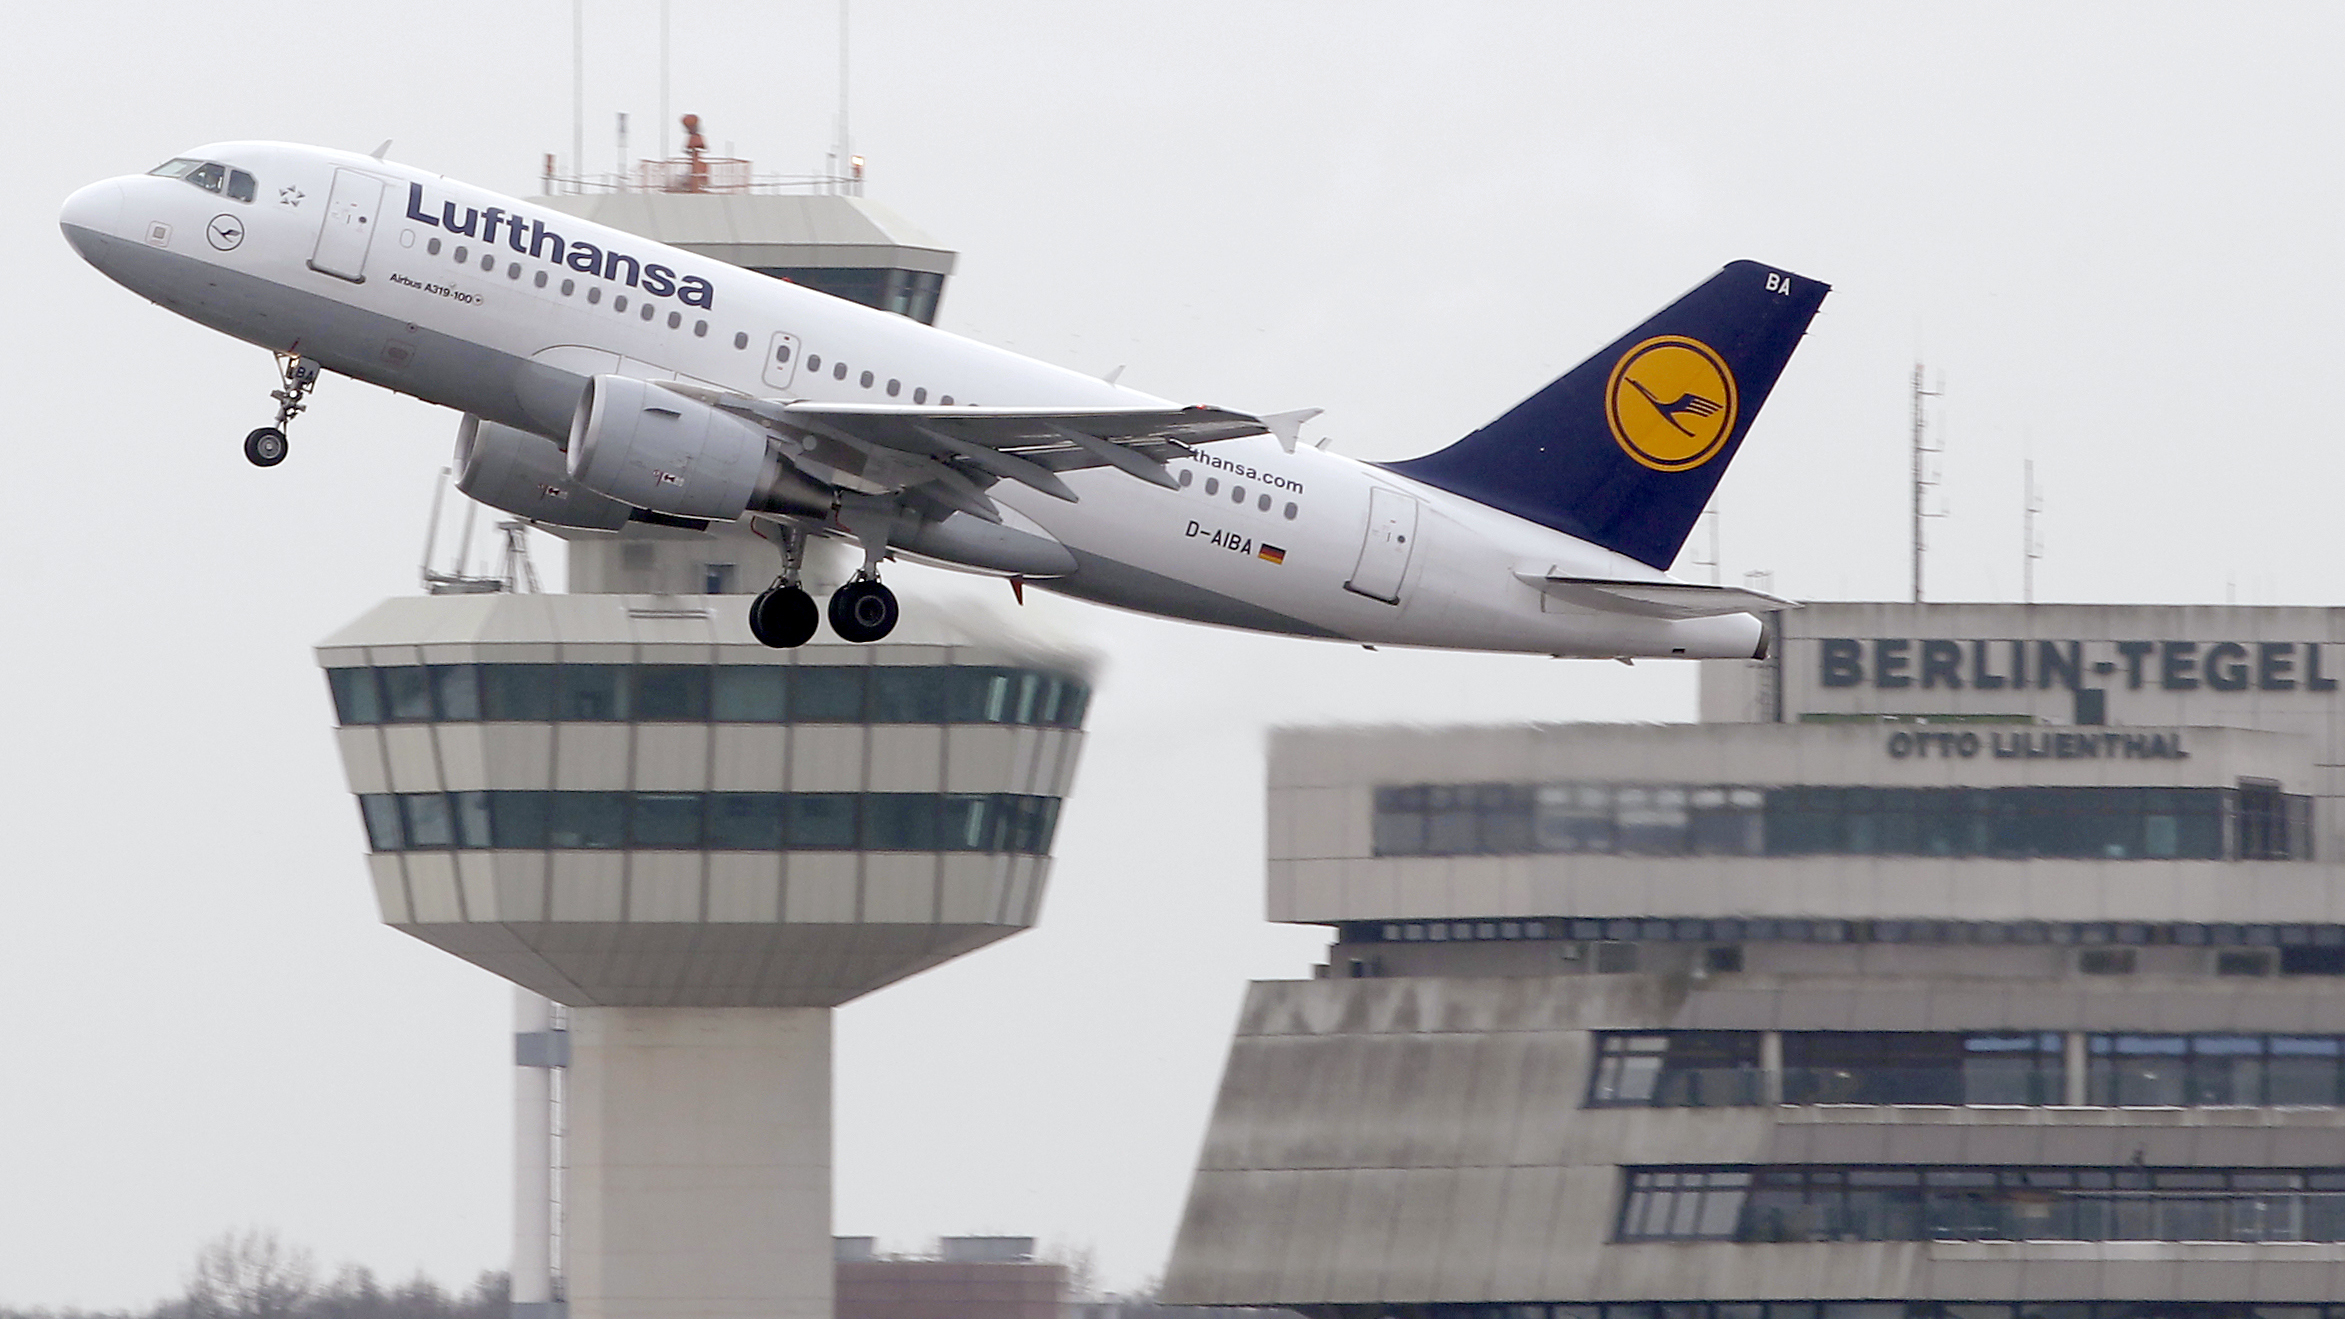 Berlin Tegel Havaalanı'ndan Son Tarifeli Uçak Cumartesi Günü Kalktı